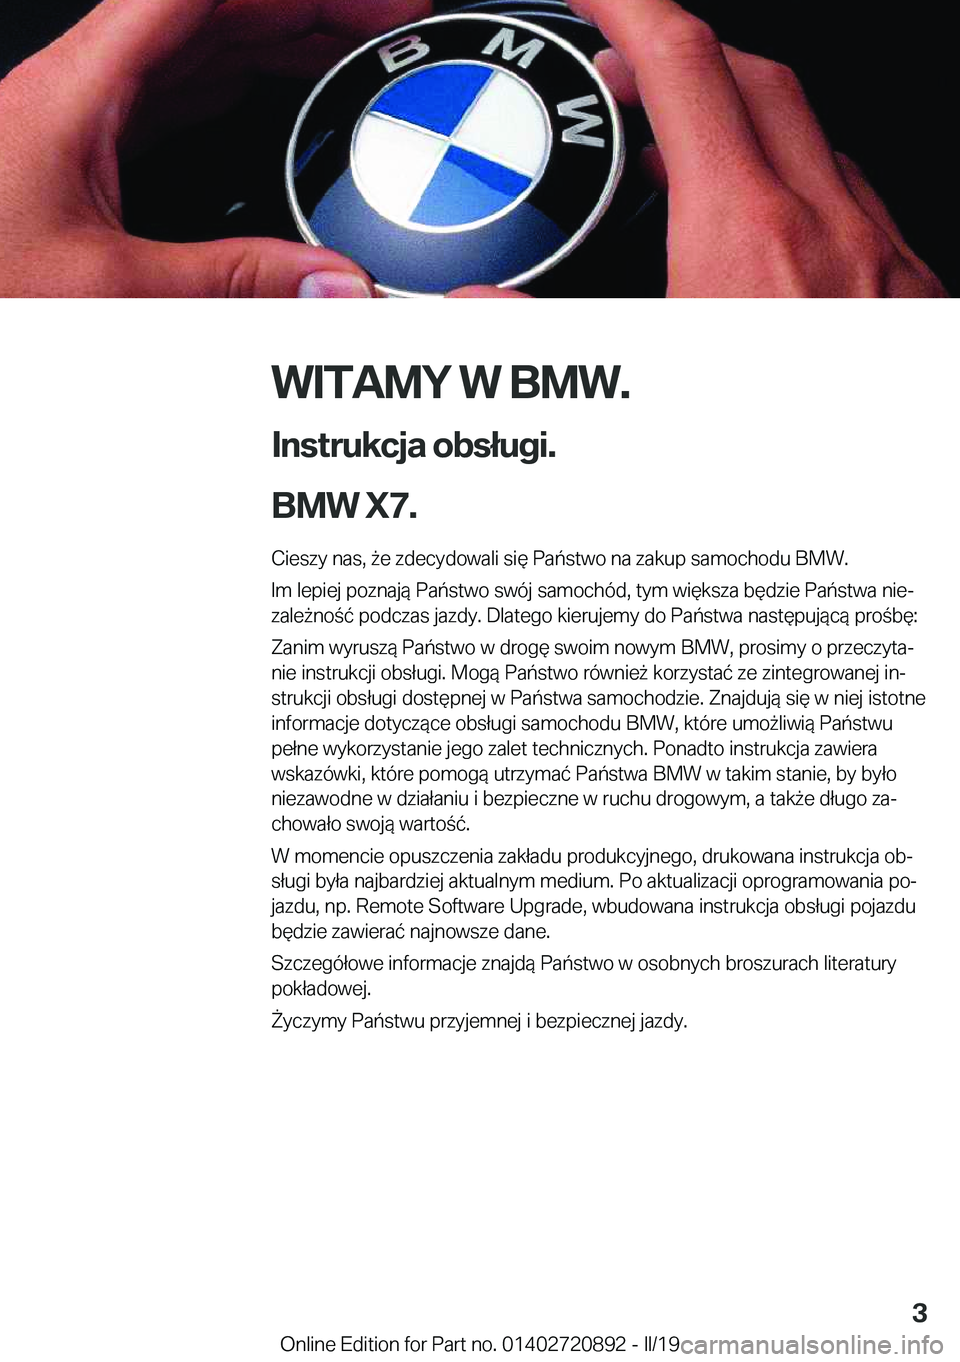 BMW X7 2019  Instrukcja obsługi (in Polish) �W�I�T�A�M�Y��W��B�M�W�.
�I�n�s�t�r�u�k�c�j�a��o�b�s�ł�u�g�i�.
�B�M�W��X�7�. �C�i�e�s�z�y��n�a�s�,�9�e��z�d�e�c�y�d�o�w�a�l�i��s�i�